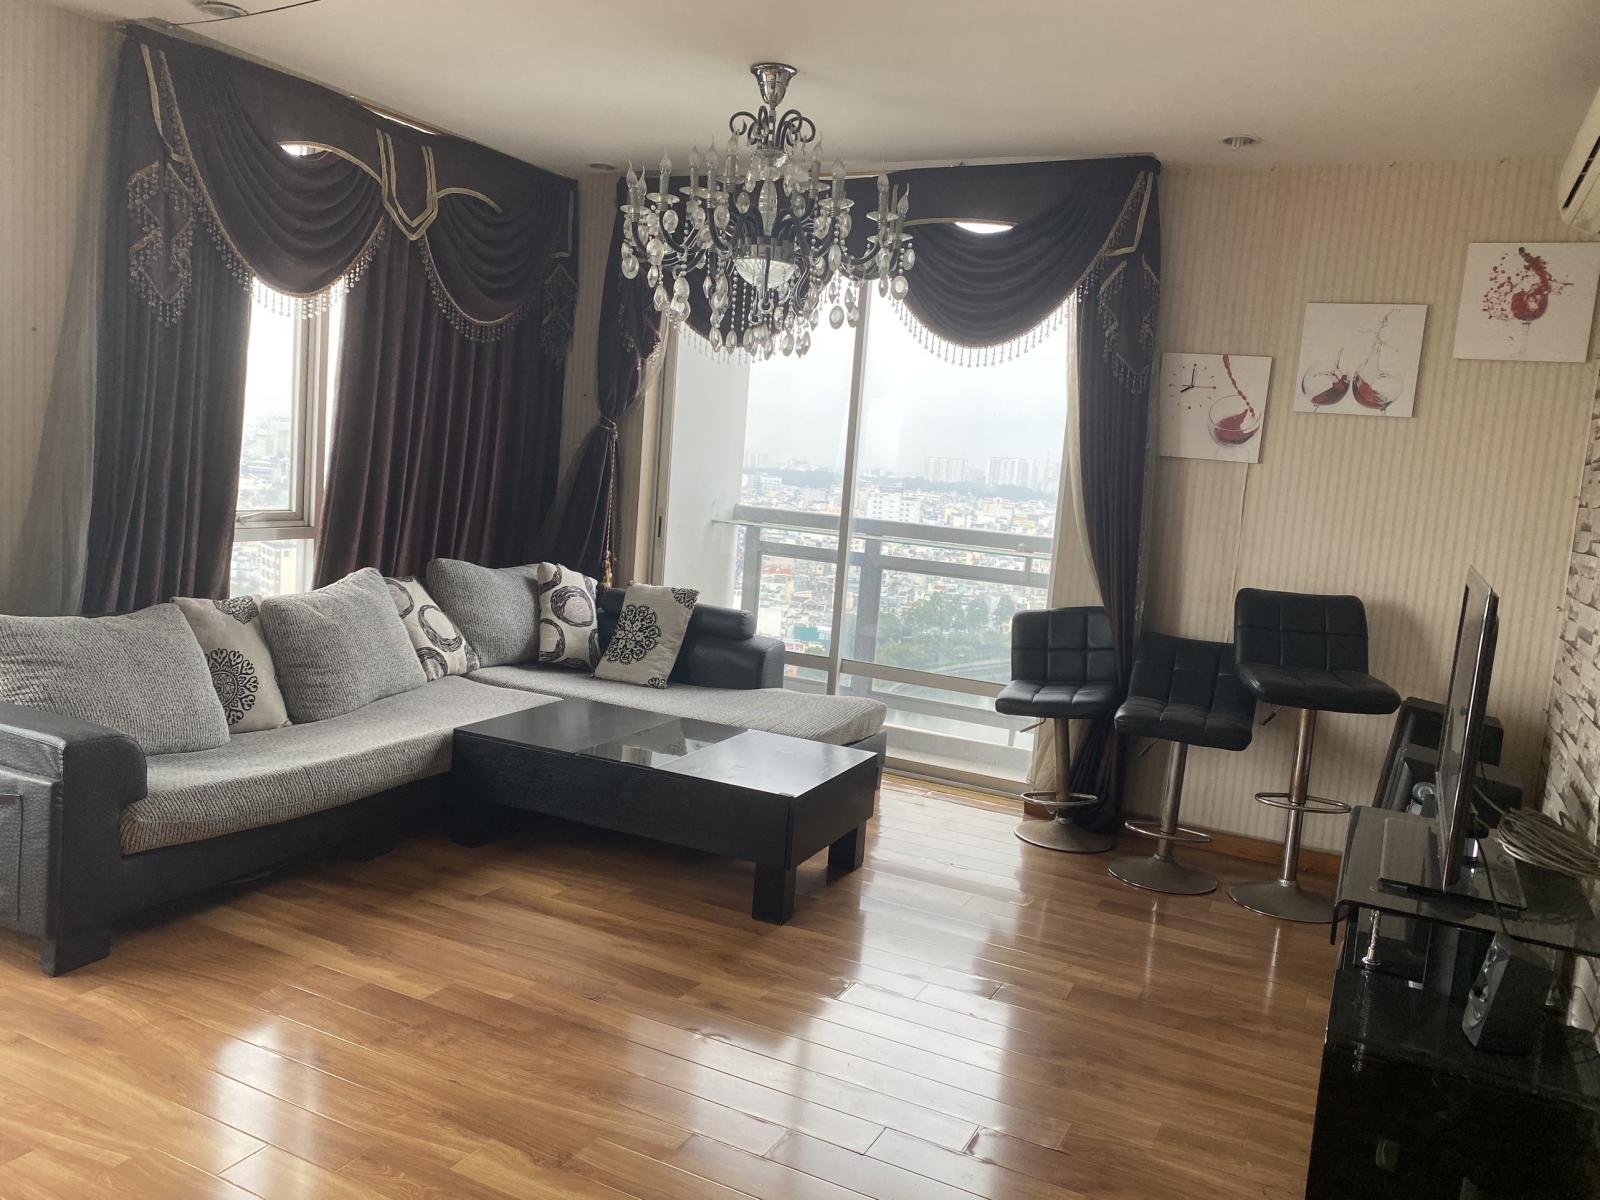 Cần cho thuê gấp căn hộ chung cư Horizon Tower, số 214 Trần Quang Khải, Quận 1. 108m2 02 phòng ngủ đầy đủ nội thất.